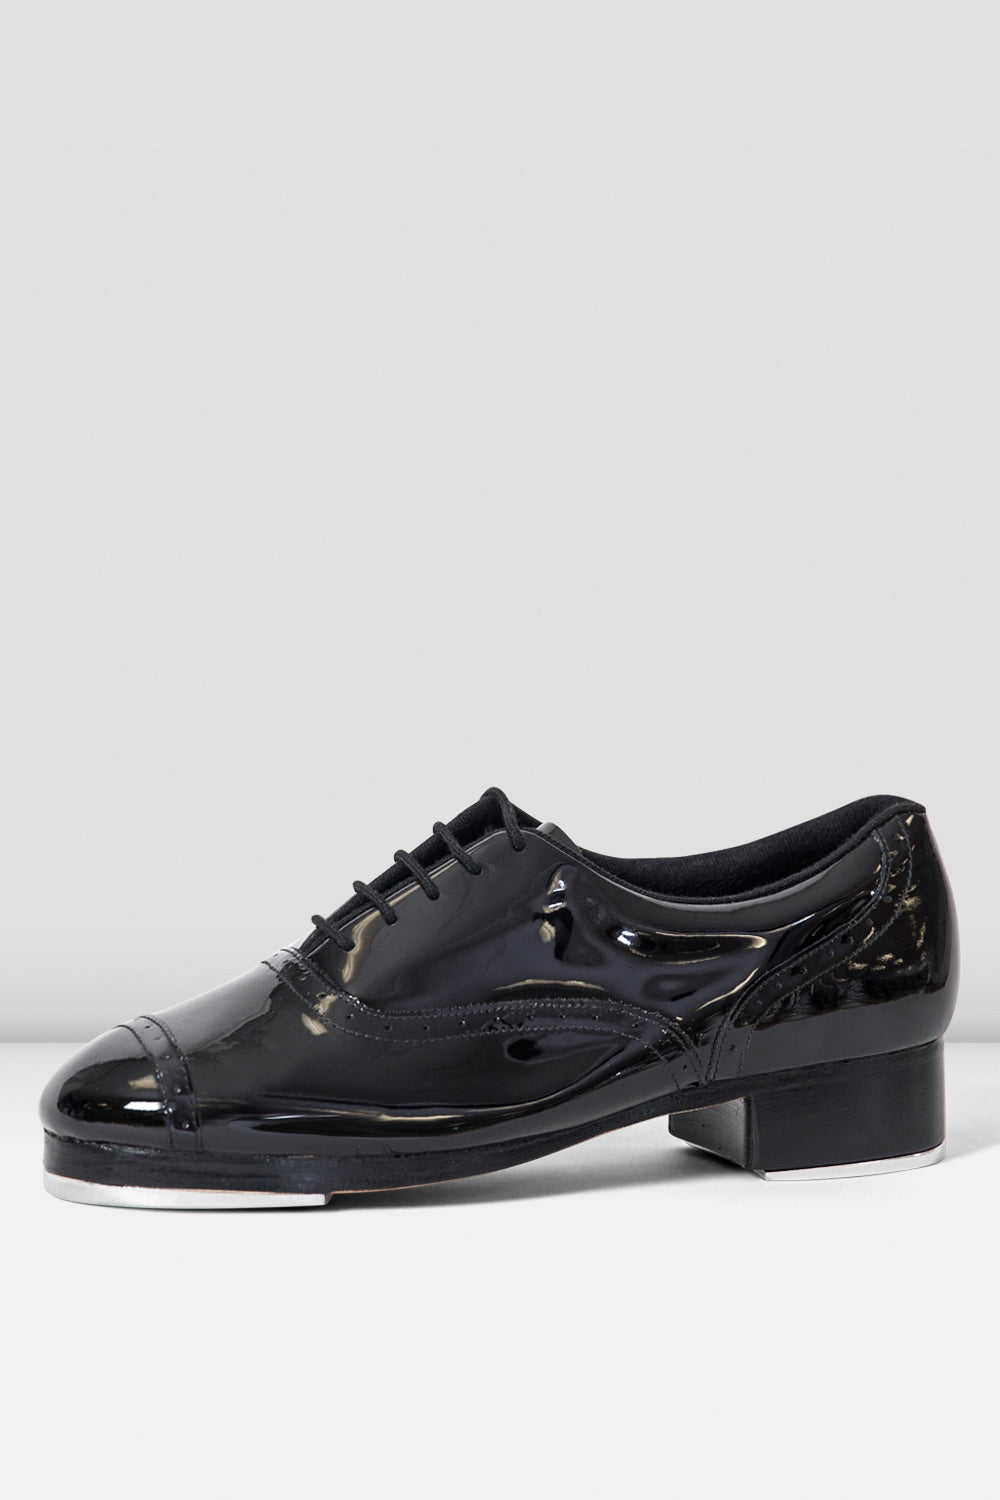 Ladies Jason Samuels Smith Tap Shoes, Black Patent – BLOCH Dance US